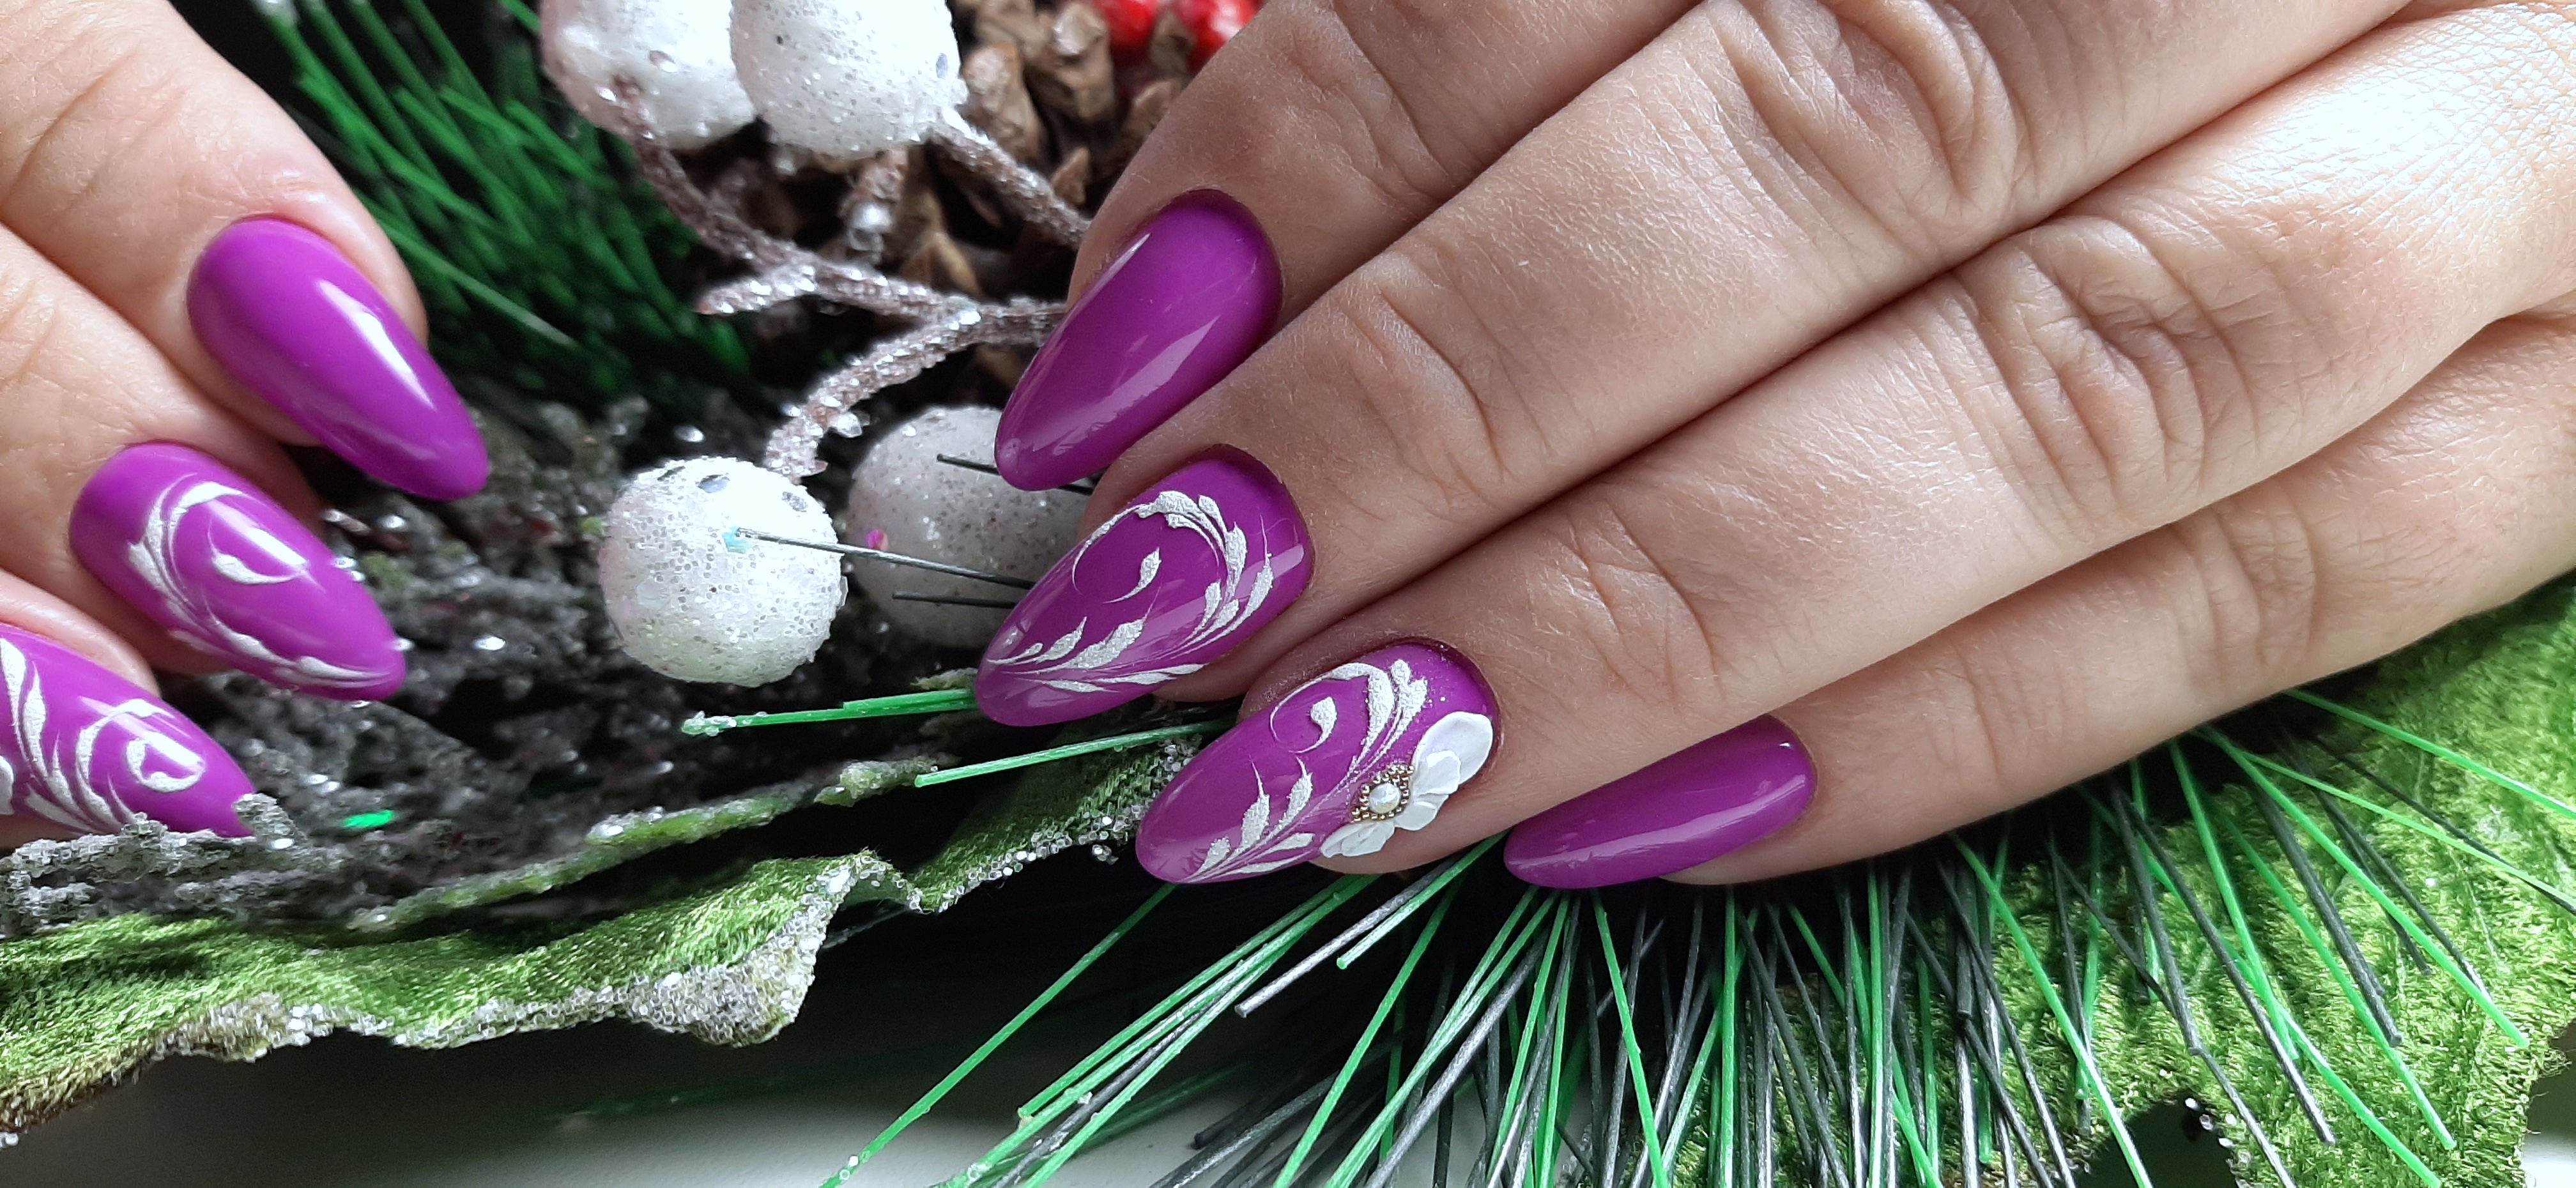 Маникюр в фиолетовом цвете с белыми вензелями и цветочной лепкой.